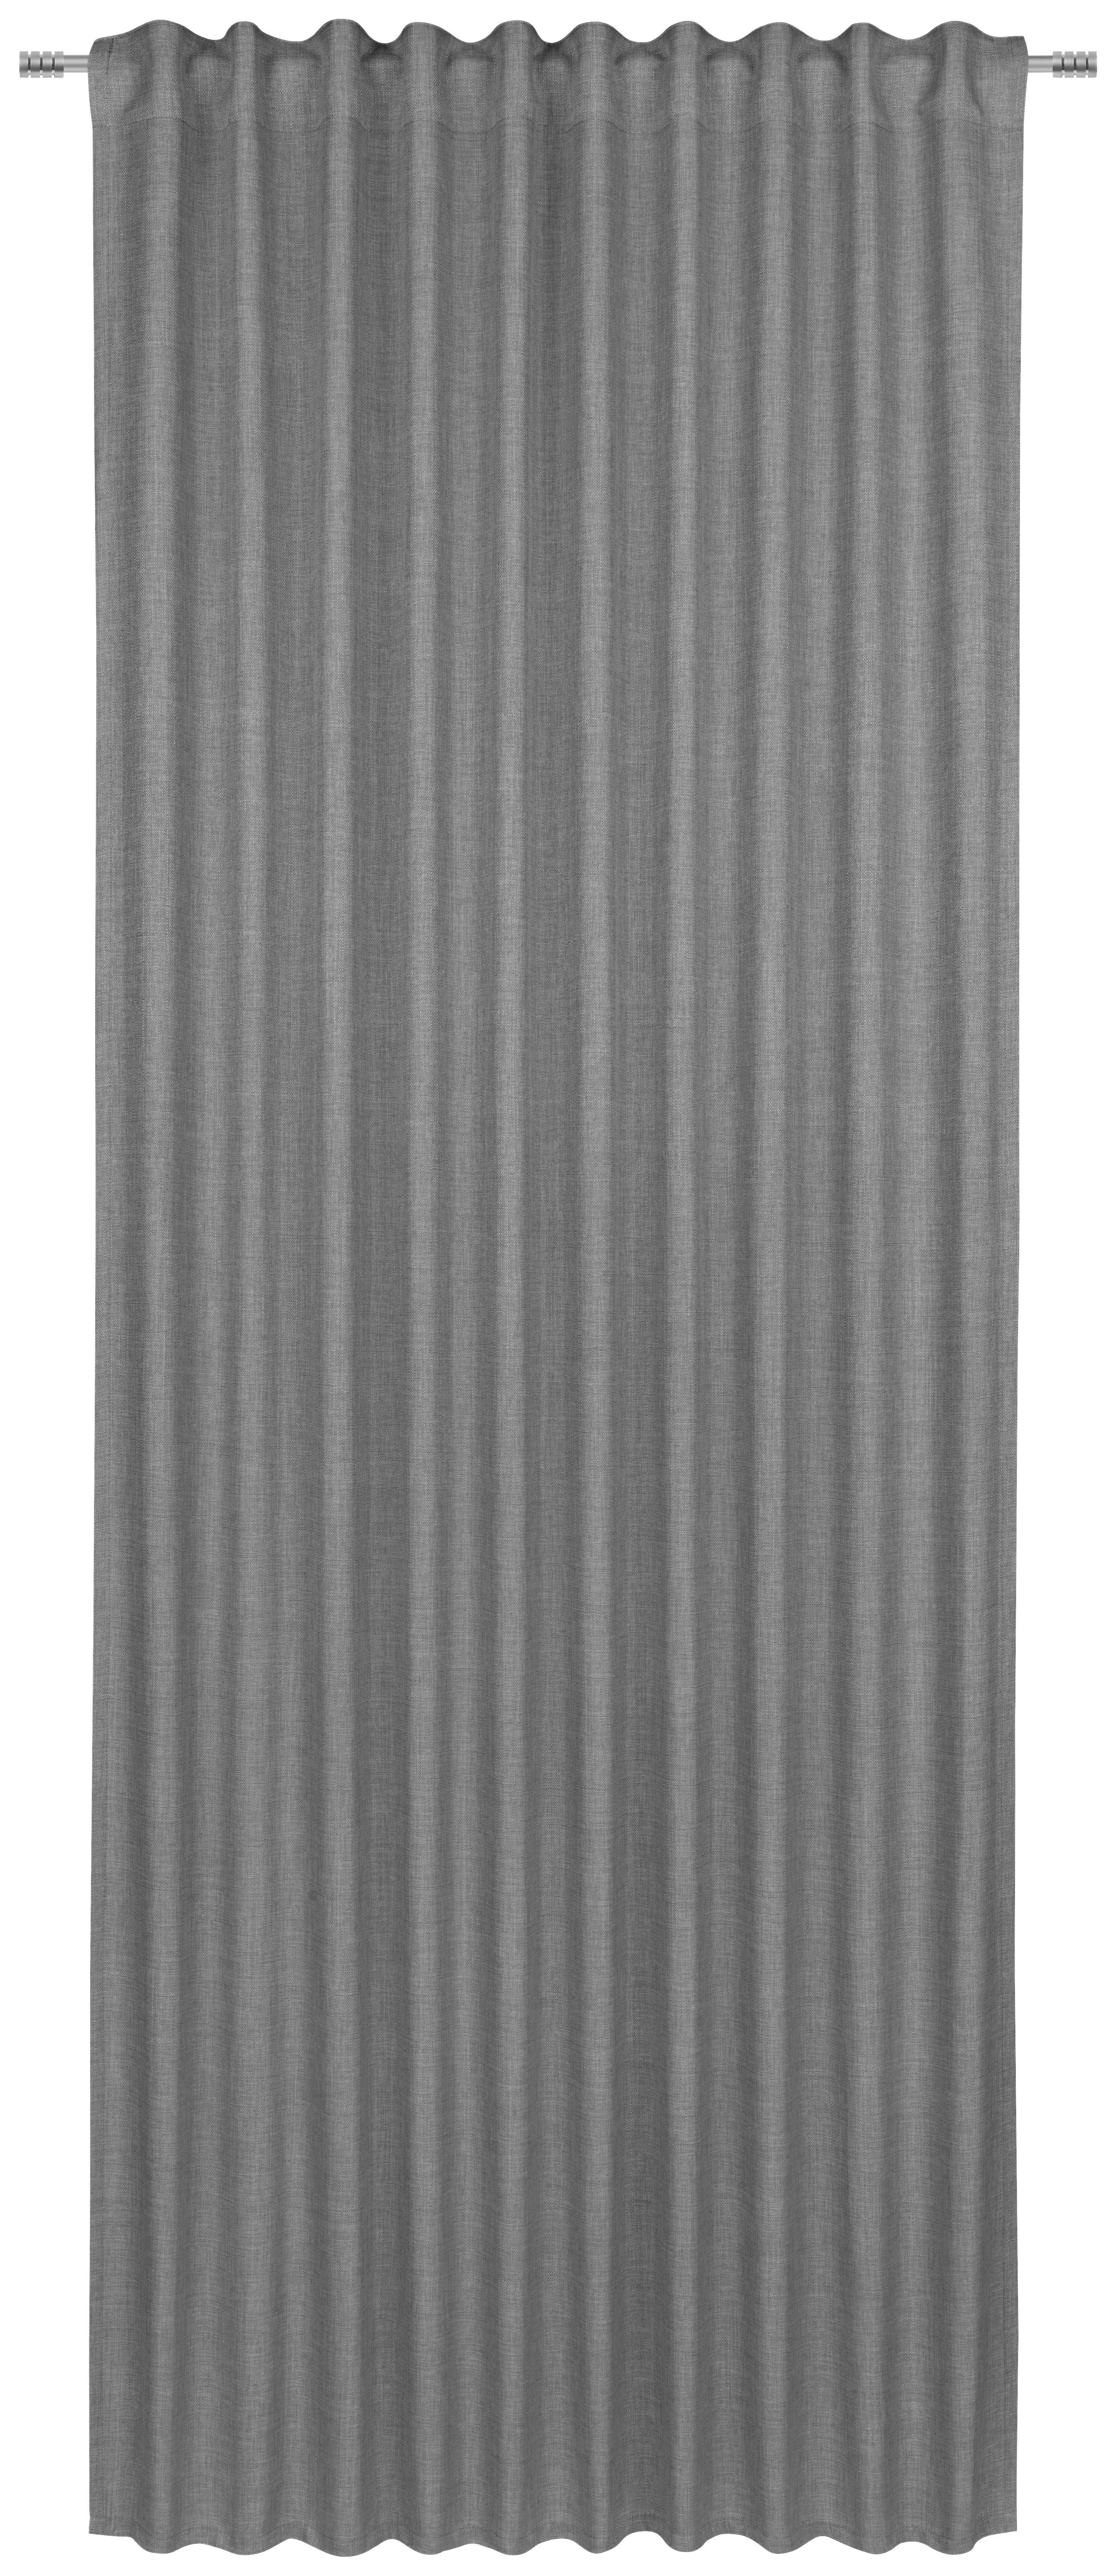 GARDINLÄNGD ej transparent  - grå, Basics, textil (140/245cm) - Best Price